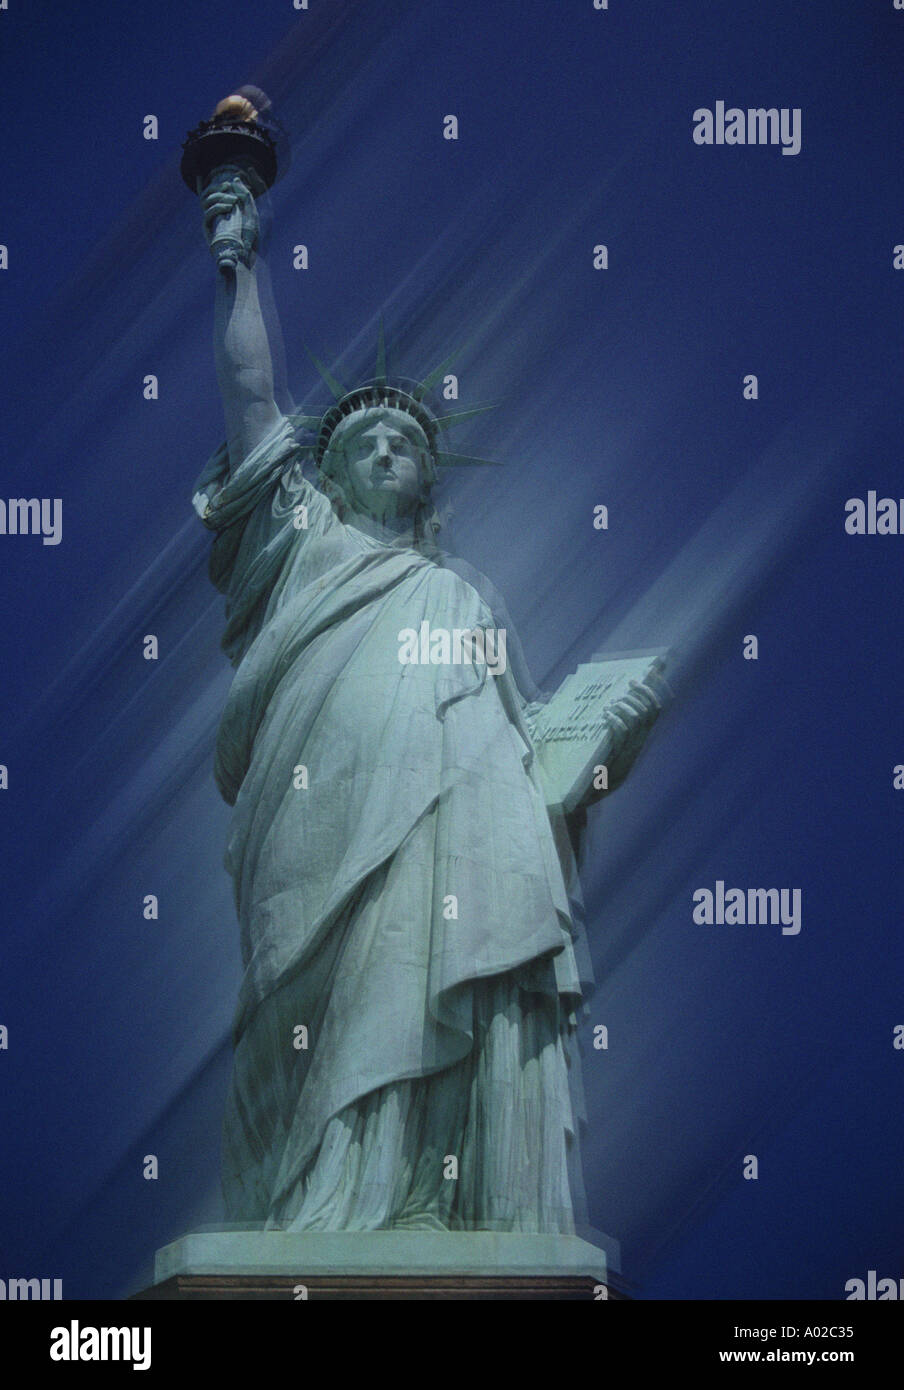 Stati Uniti d'America, New York New York City, la Statua della Libertà, motion blur effetto Foto Stock